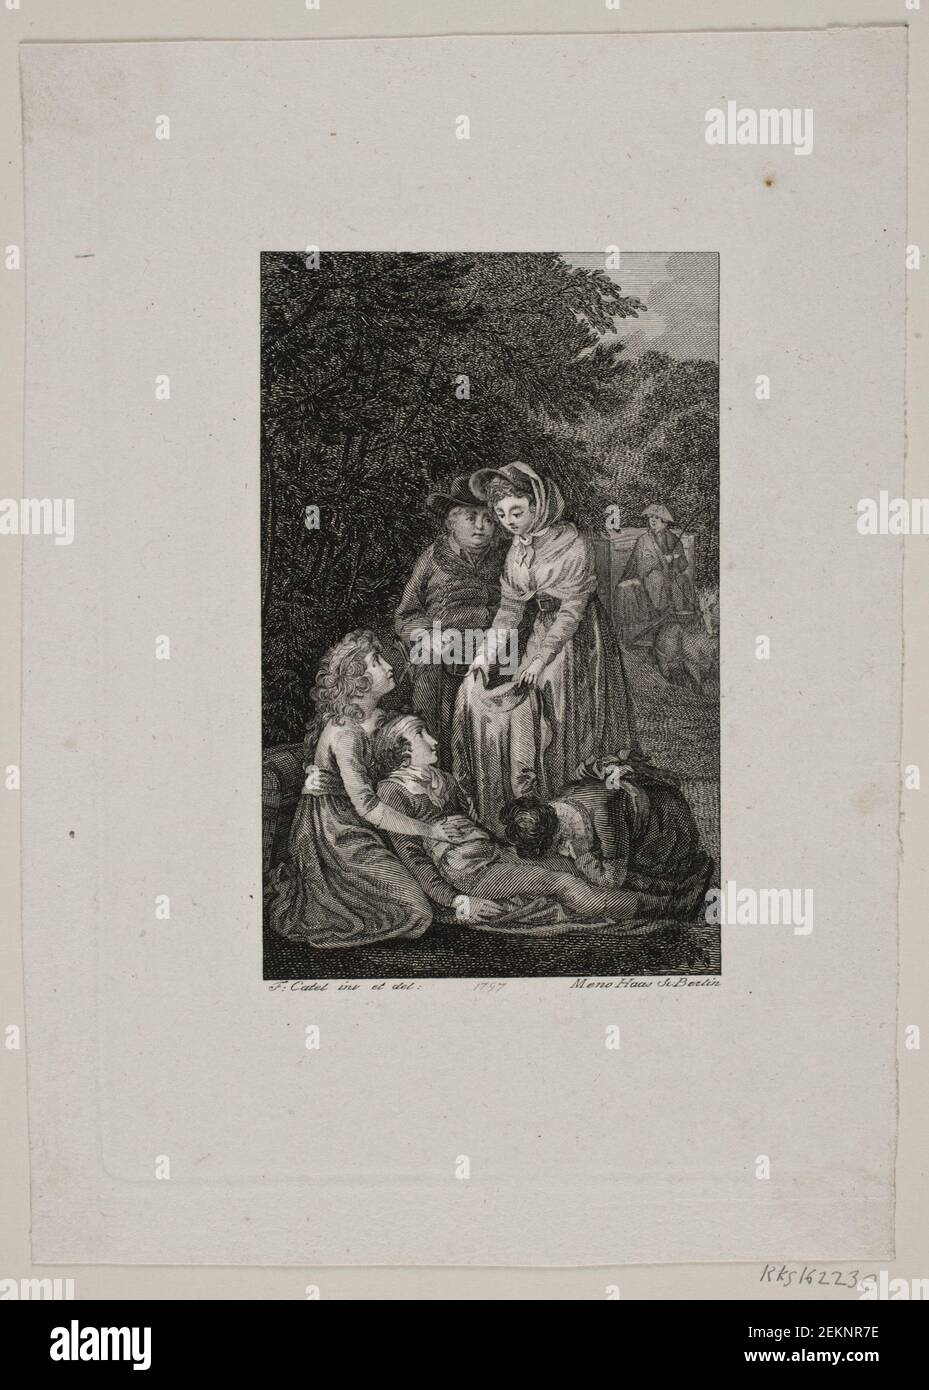 Meno Haas (1752-1833); Franz Ludwig Catel (1778-1856), Illustration mit vier Personen über einen kranken Jungen im Wald, 1797 Stockfoto